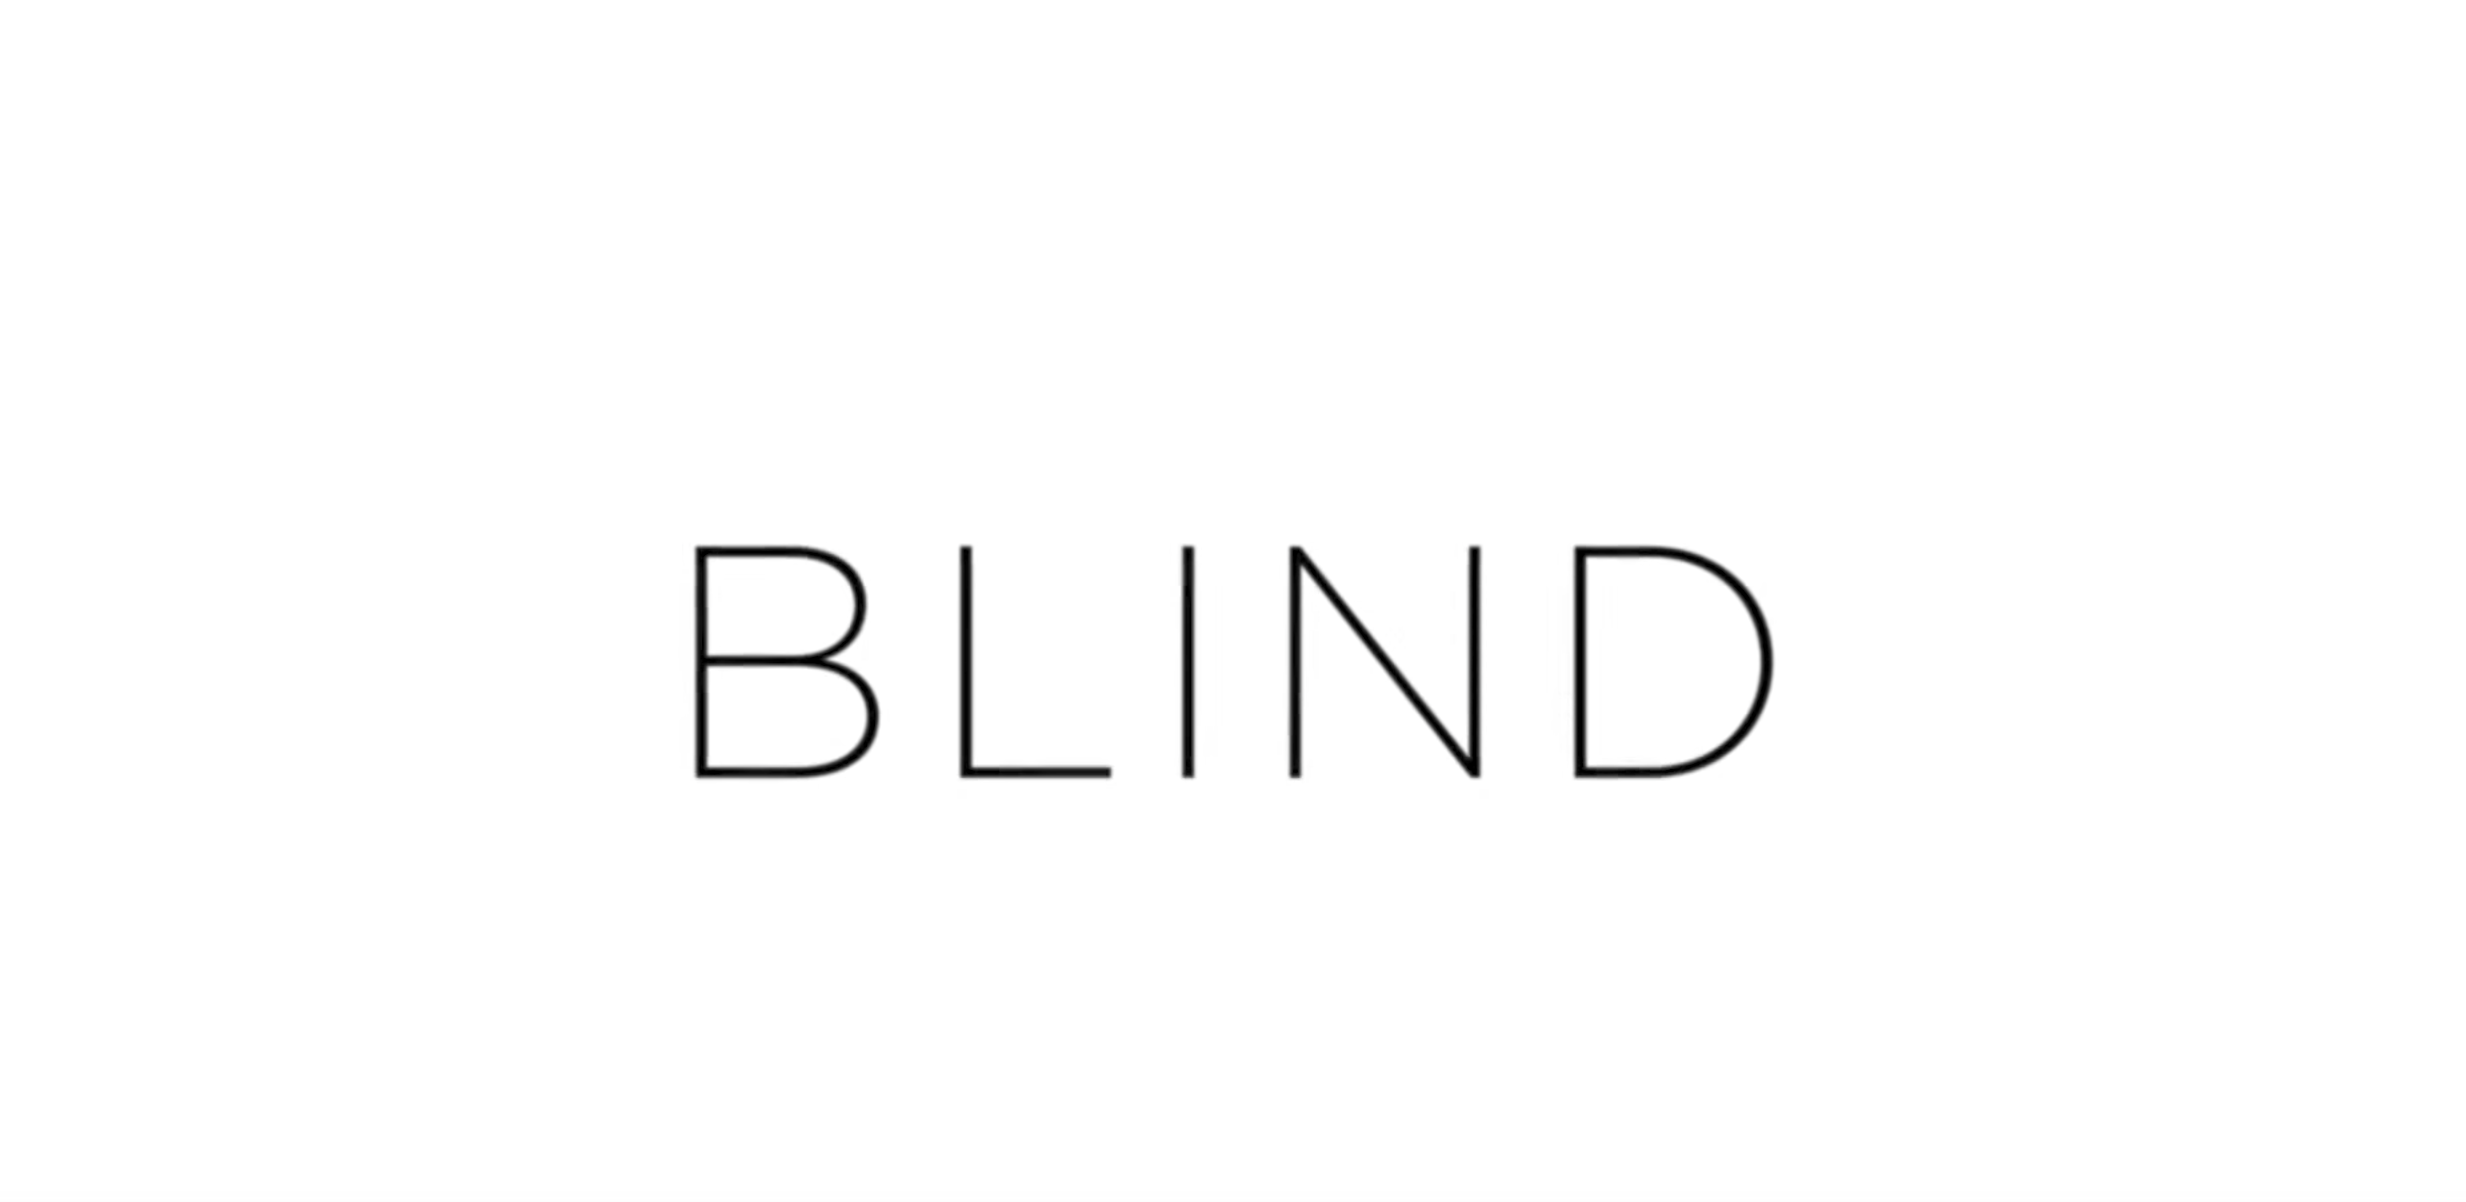 Blind (Trailer)